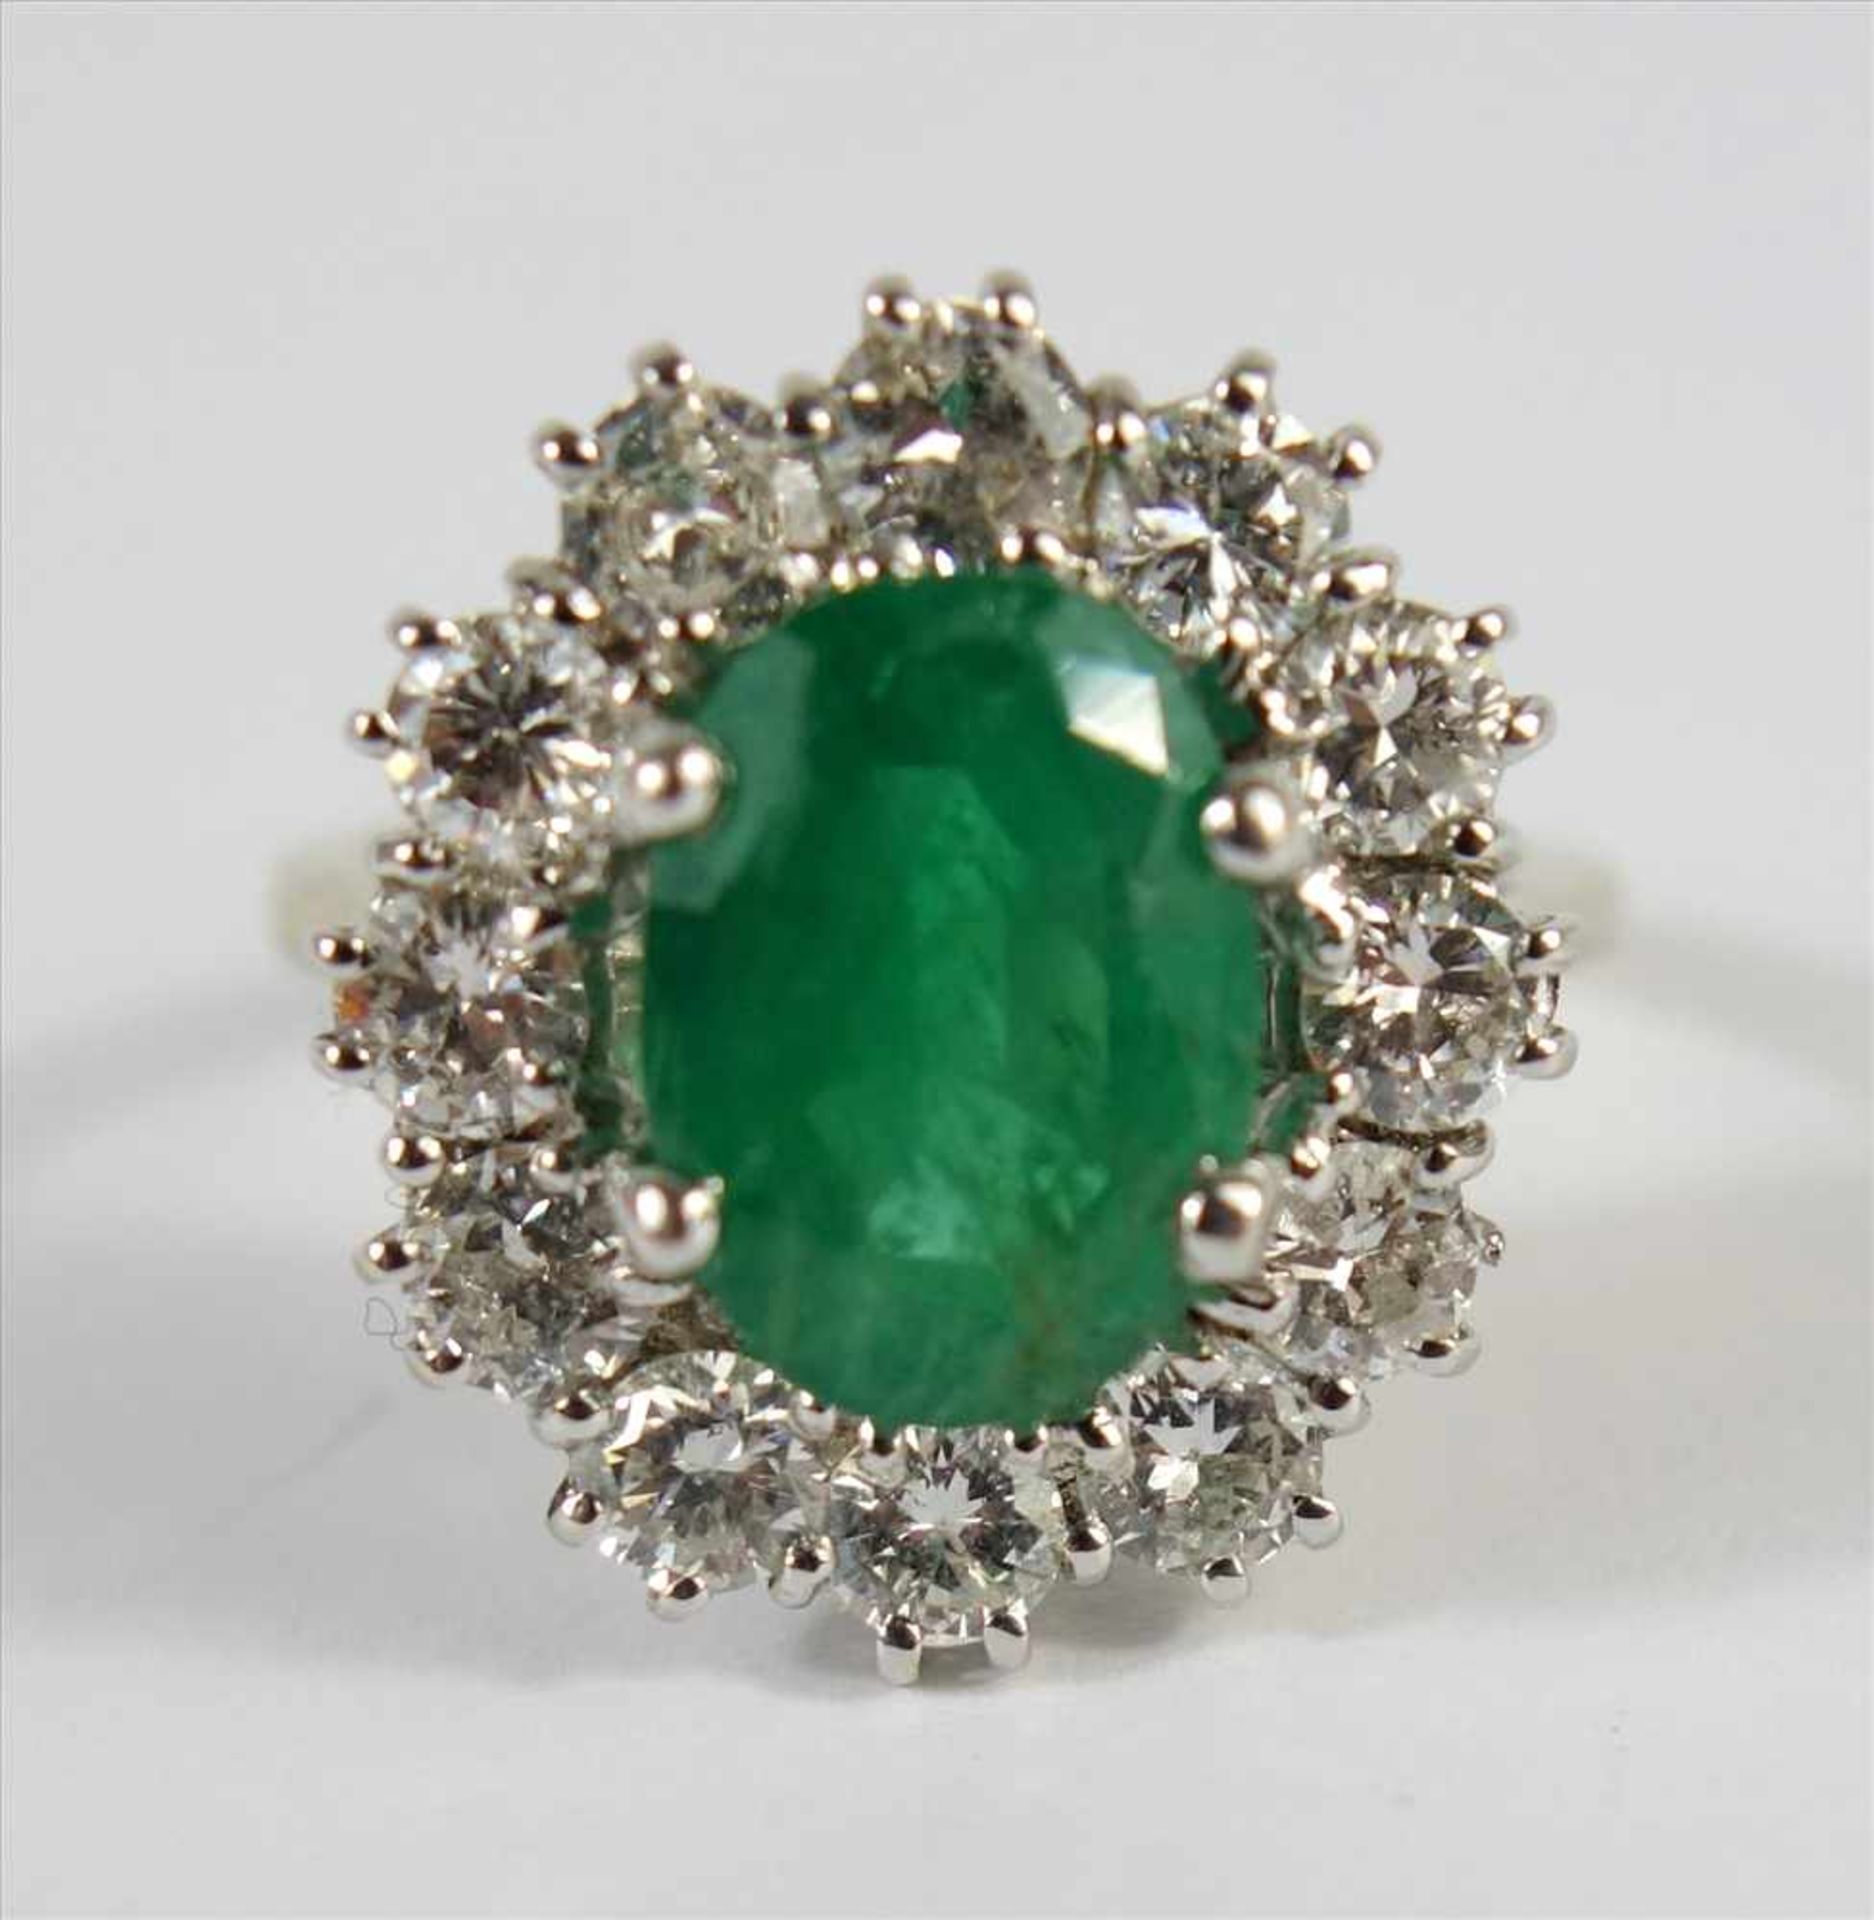 Smaragd-Dia.-Brillant-Ring, 750er Gold, Gew.6,56g, ovaler, facettierter Smaragd, leicht getrübt ( - Bild 2 aus 2